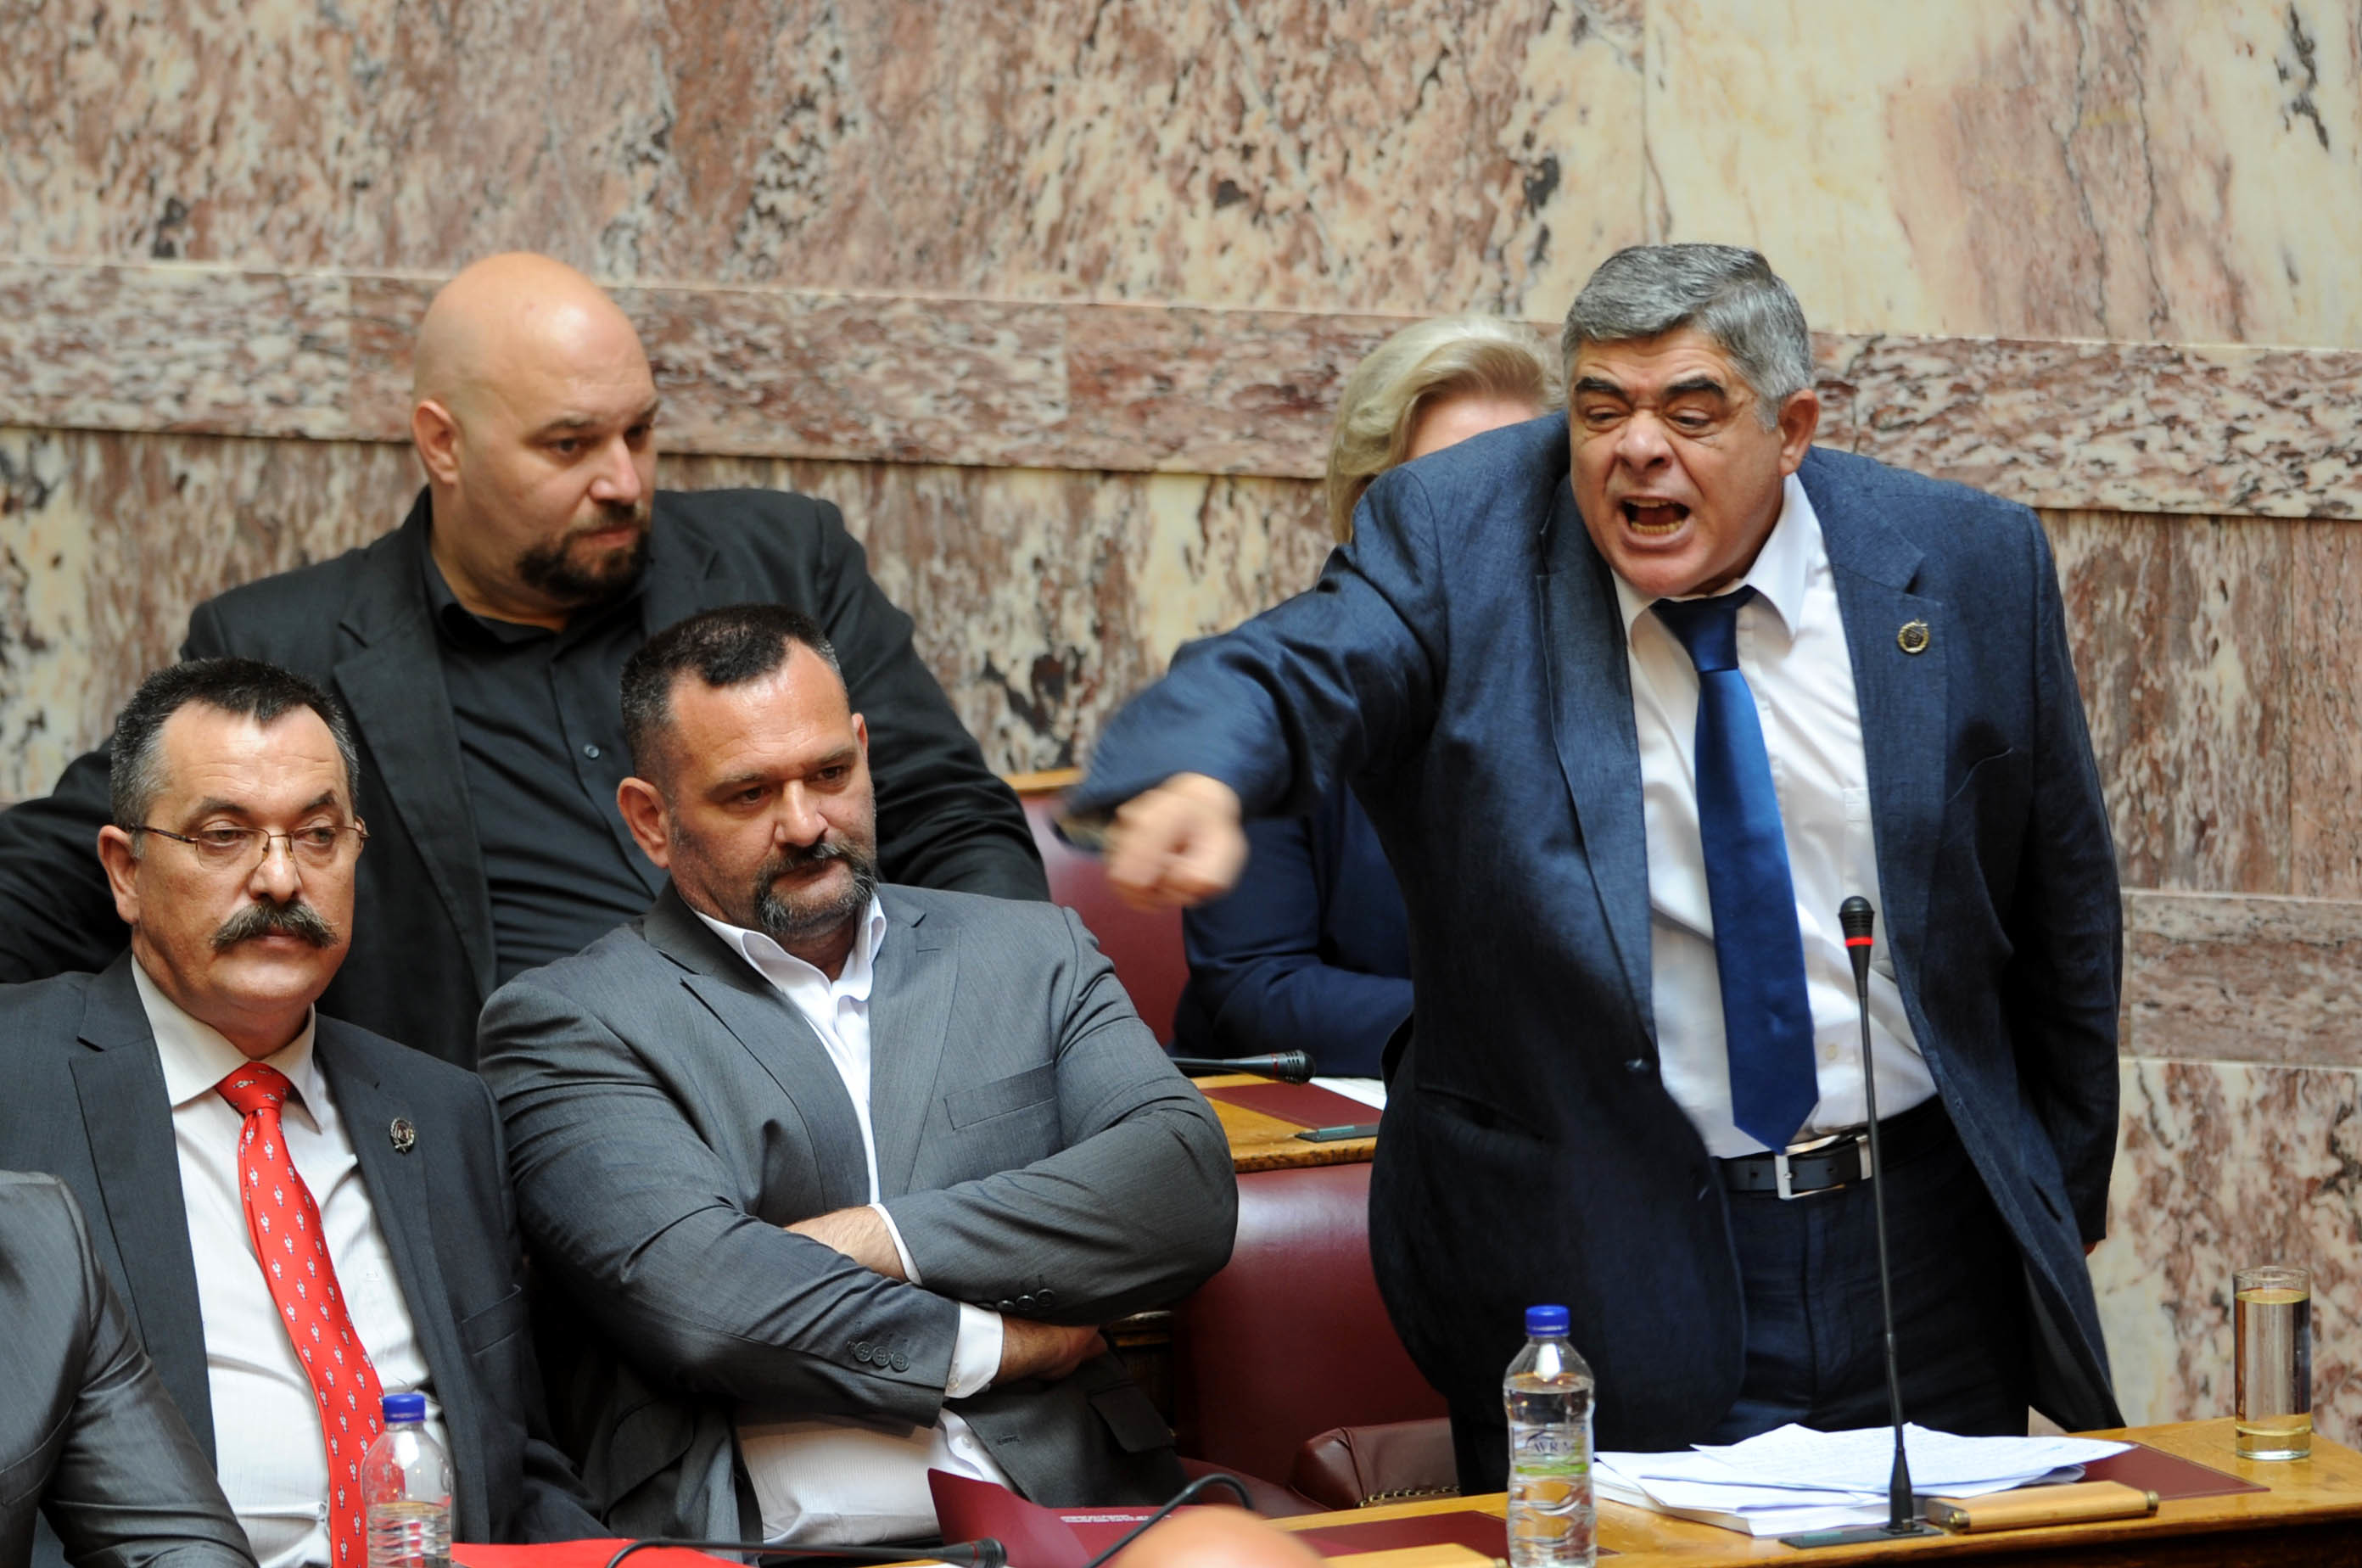 Παραλήρημα Μιχαλολιάκου στην Ολομέλεια της Βουλής: Ντροπή σας ψευτοδημοκράτες – Είμαι αμετανόητος εθνικιστής και χρυσαυγίτης